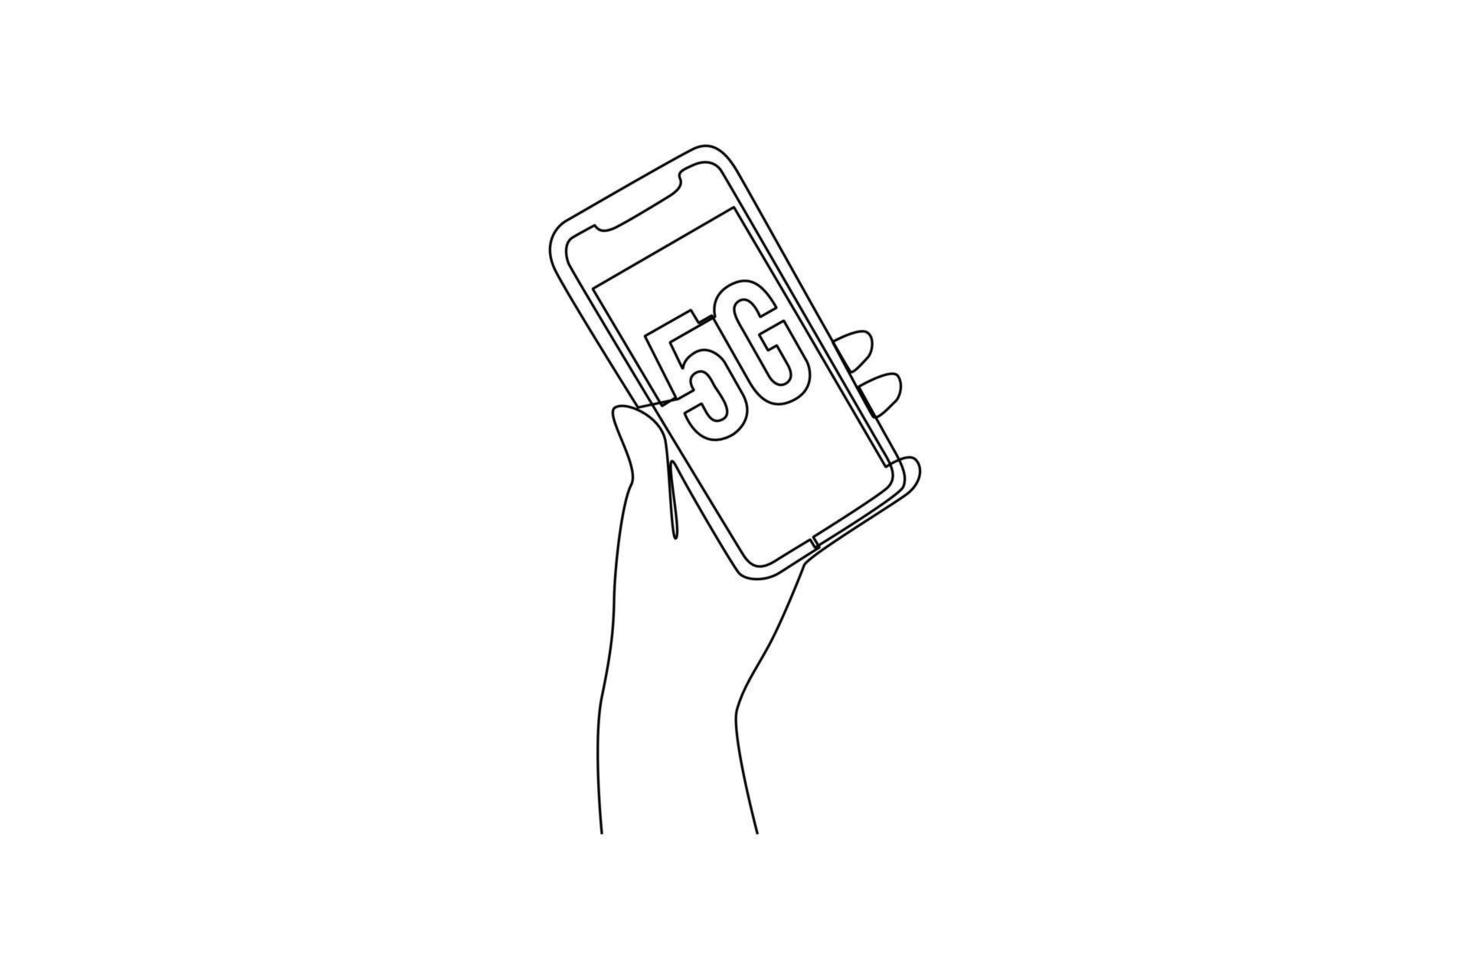 Single einer Linie Zeichnung 5g Smartphone. 5g Technologie Konzept. kontinuierlich Linie zeichnen Design Grafik Vektor Illustration.